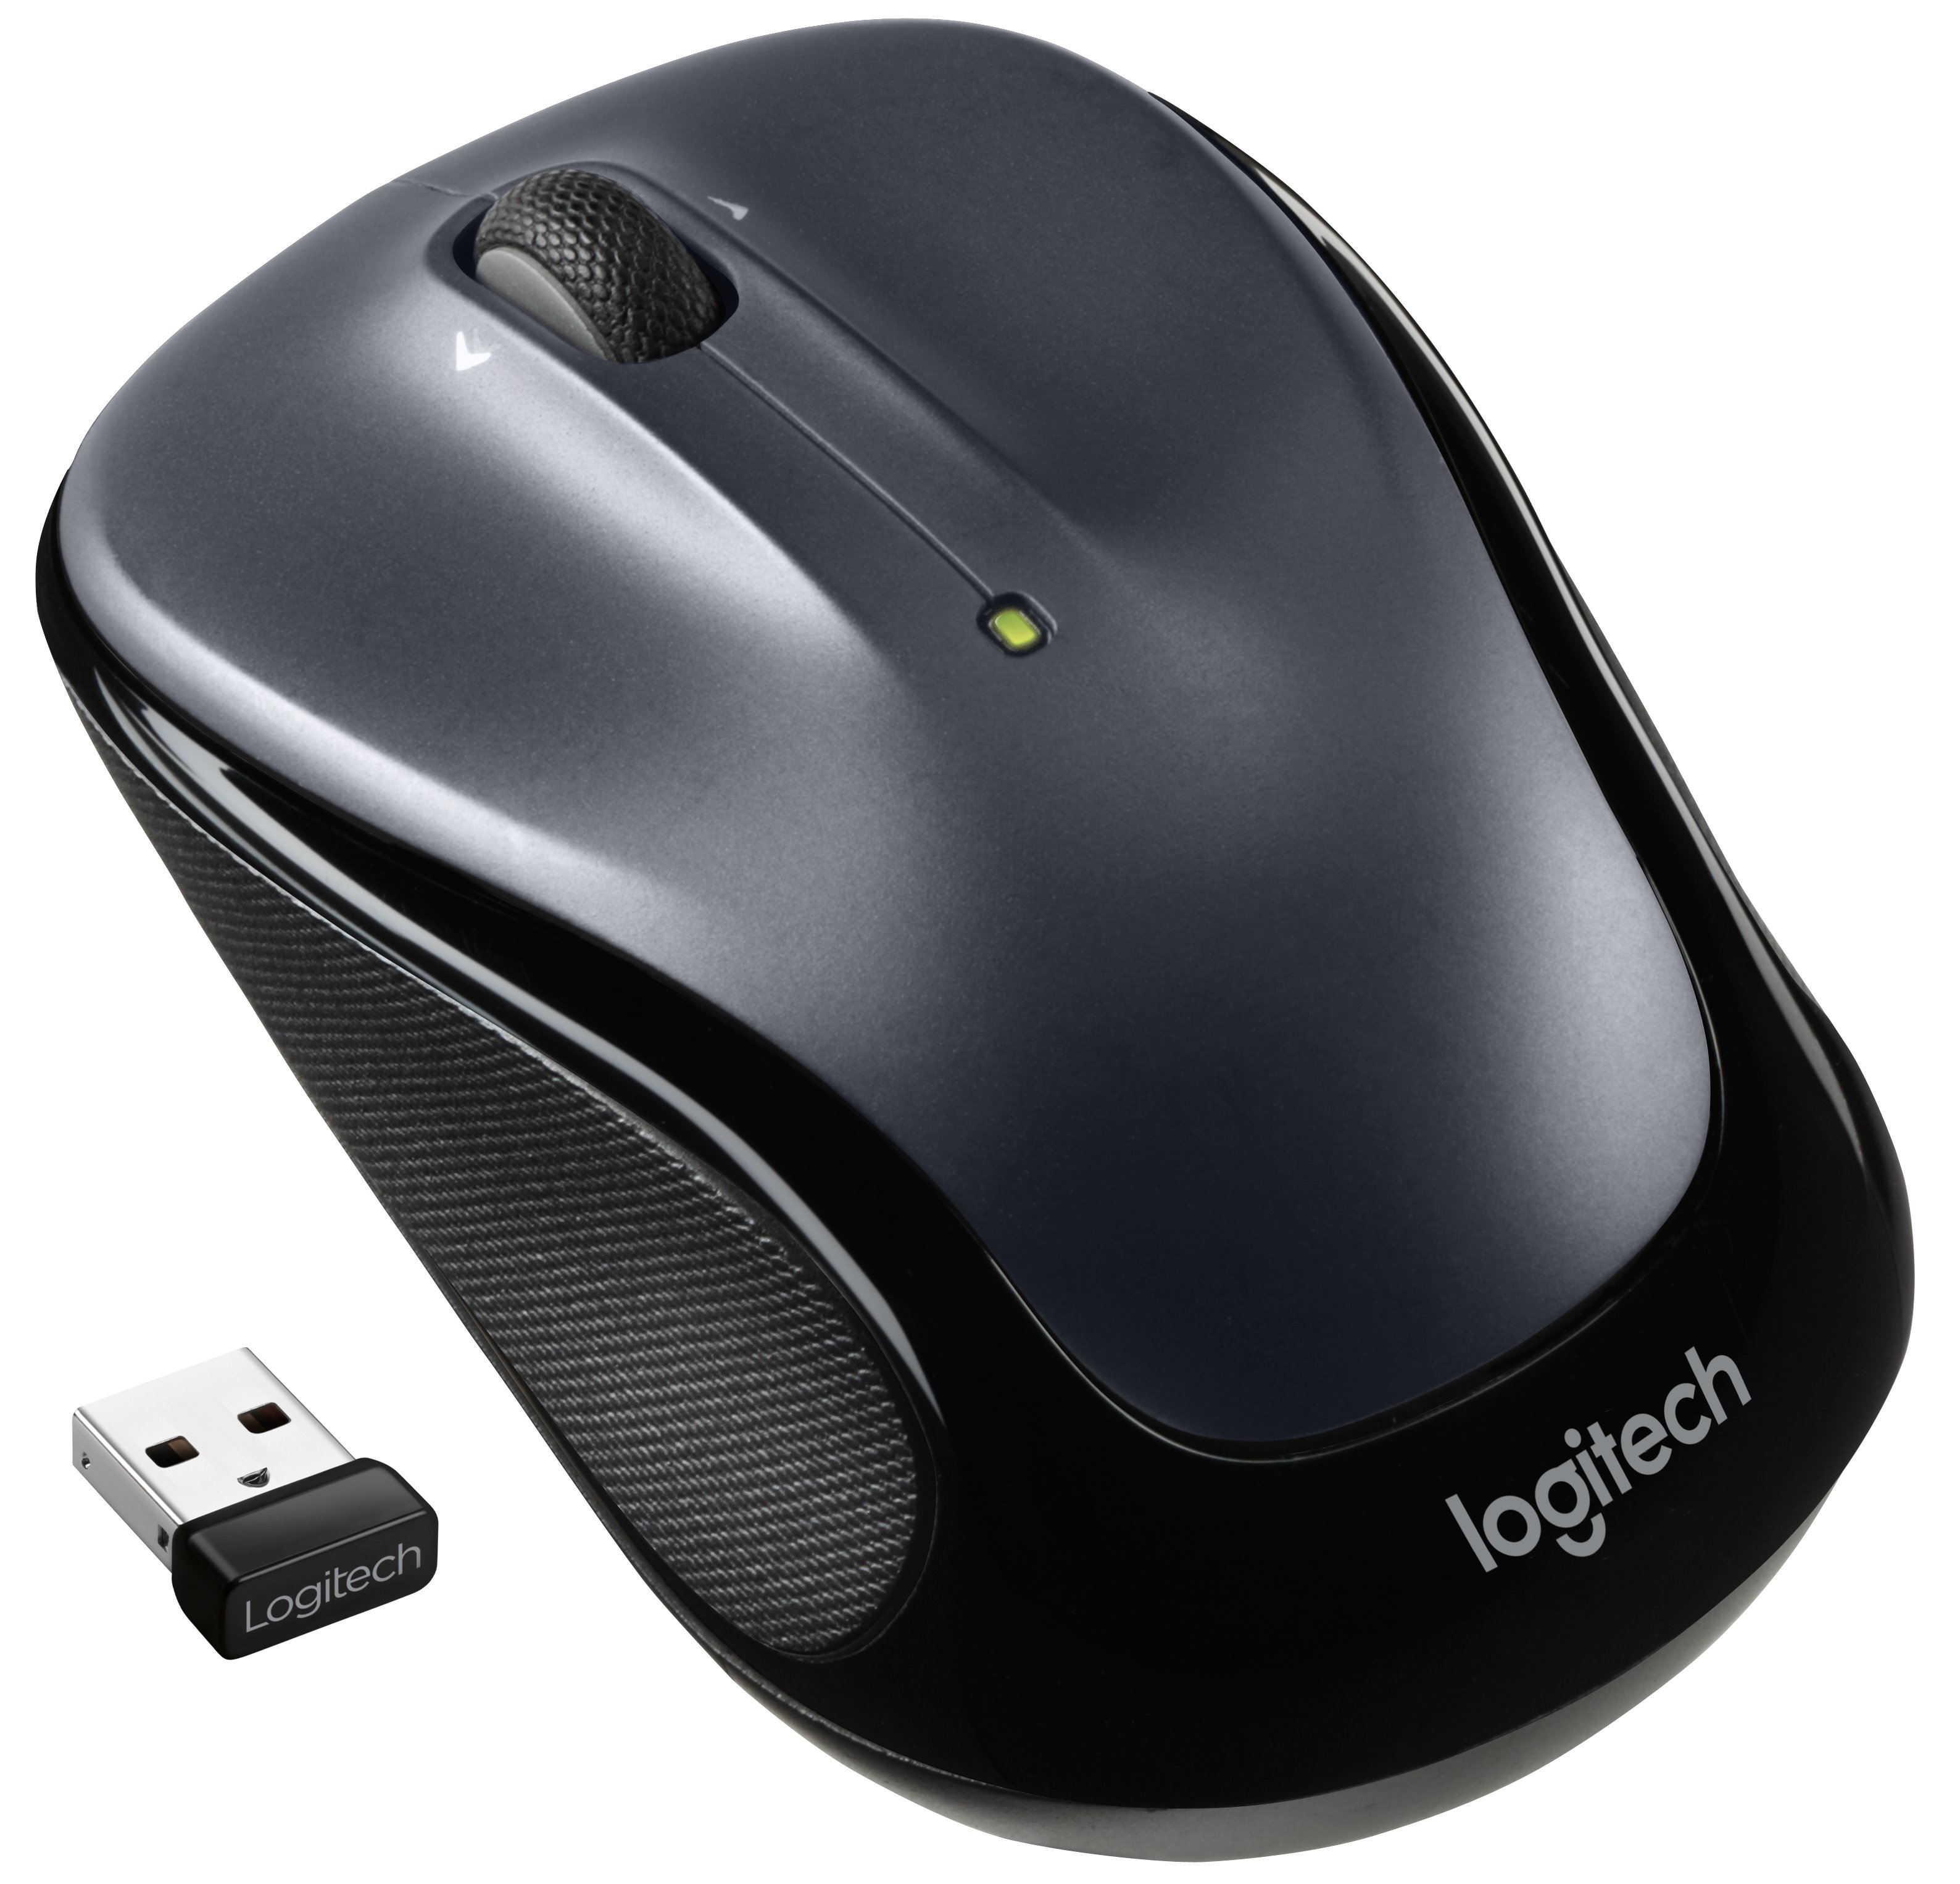 Logitech Mouse ZM325s / 910-006812 Grigio